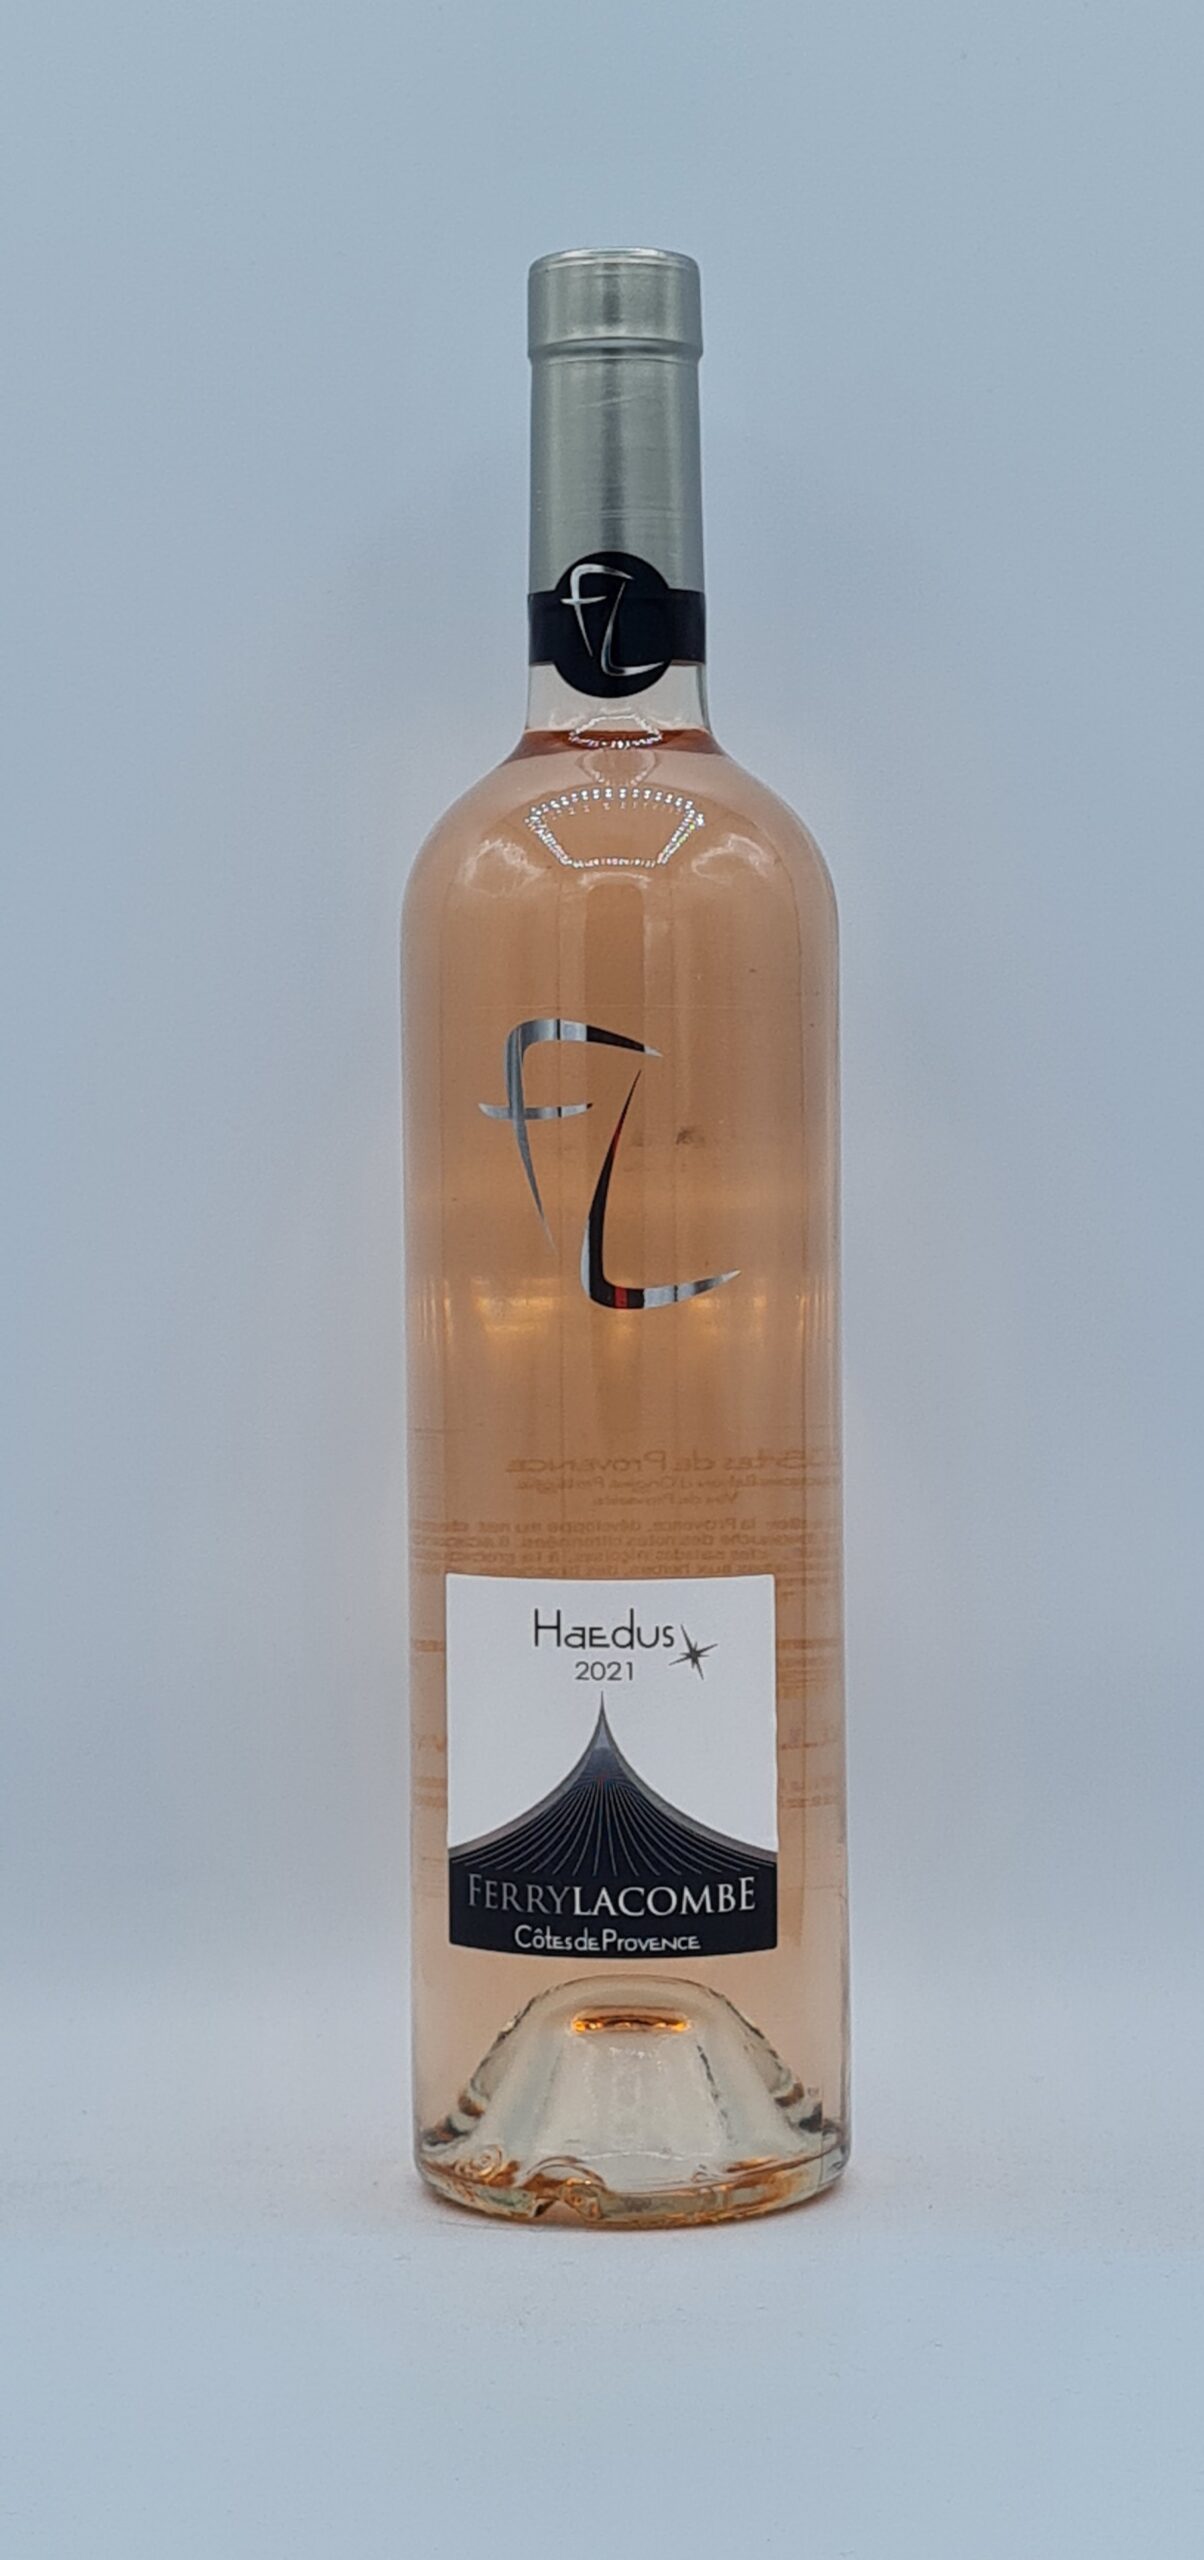 Magnum Côtes de Provence “Haedus” rosé 2021 Ferry Lacombe